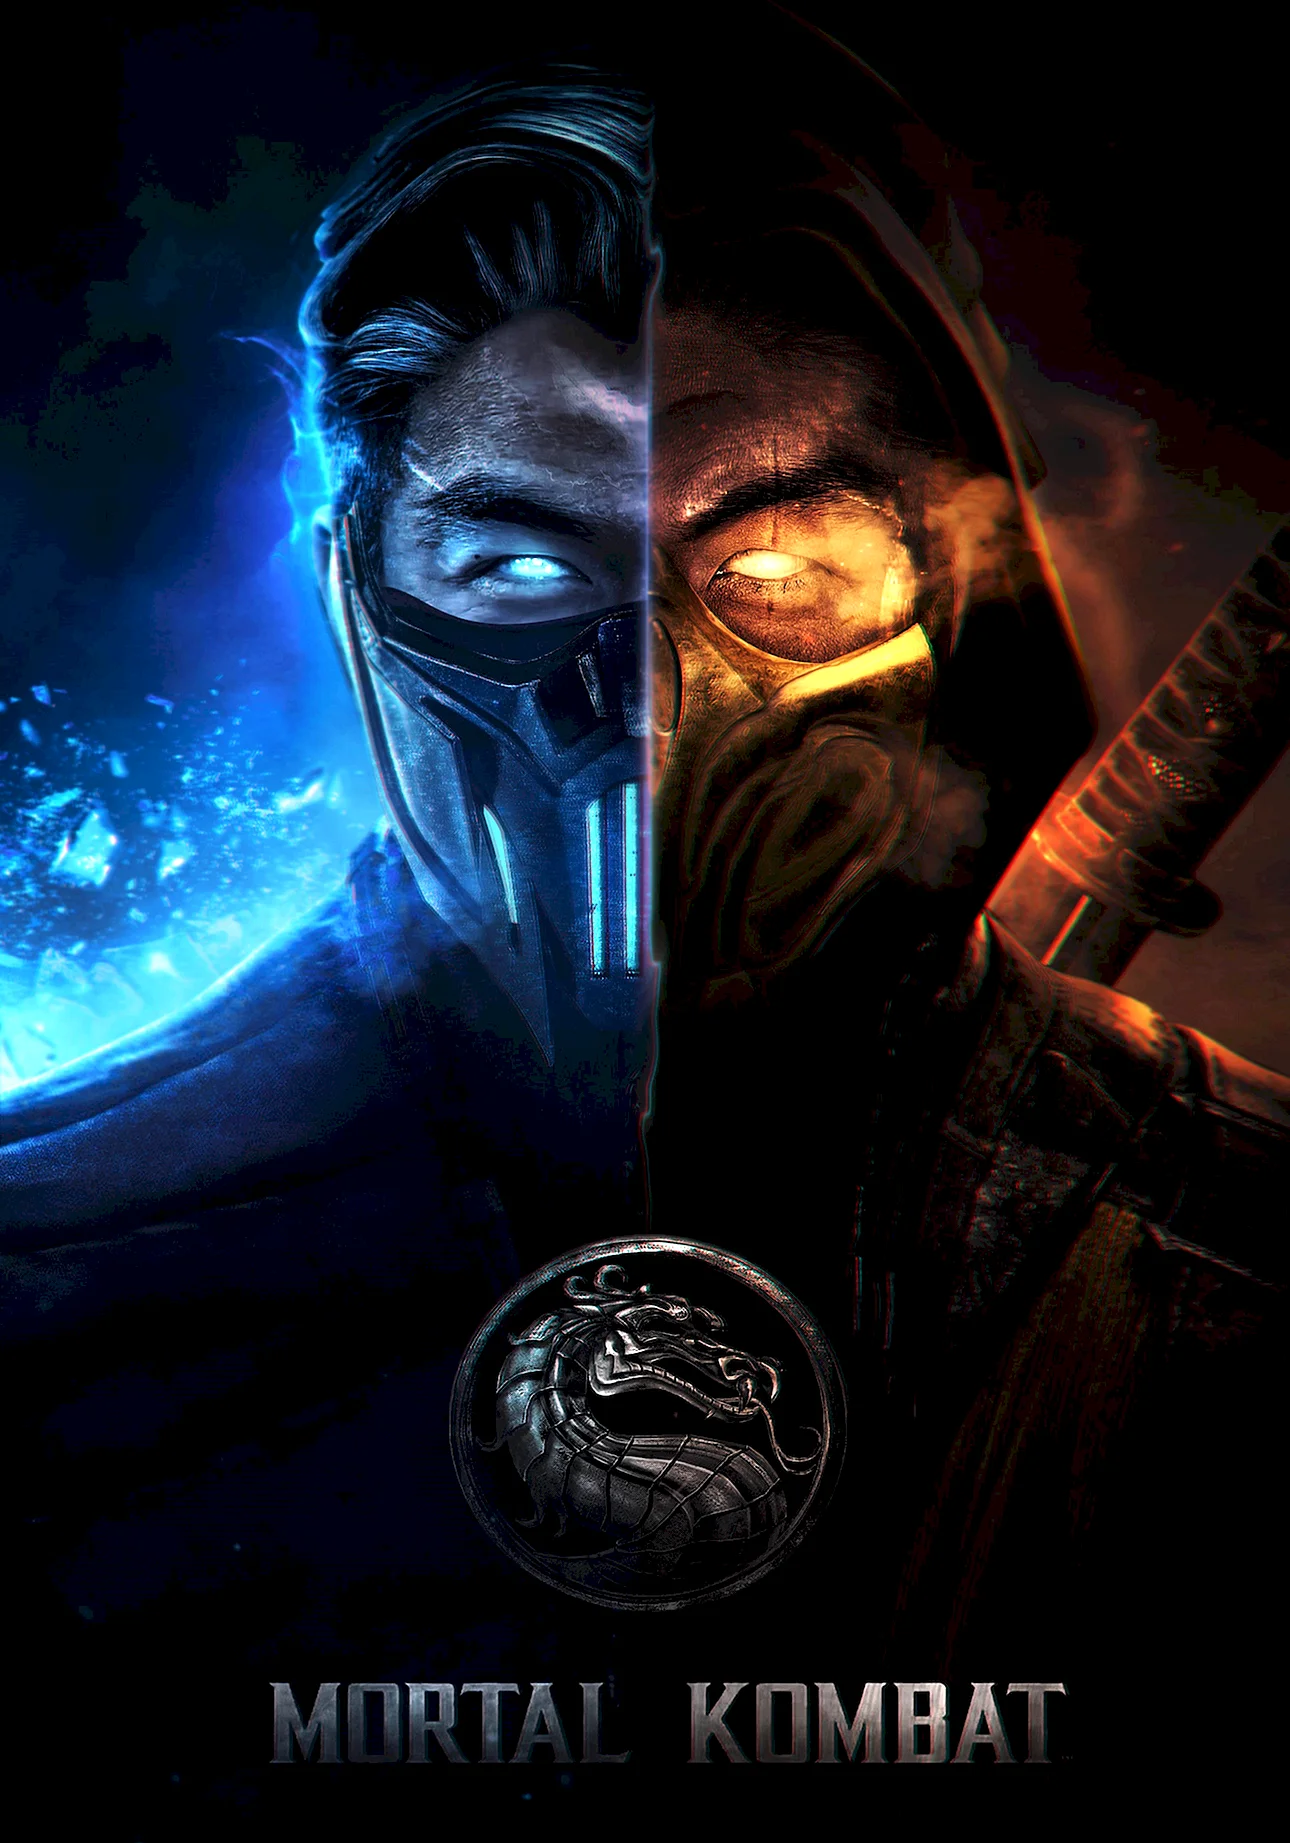 Mortal Kombat 2021 Wallpaper For iPhone